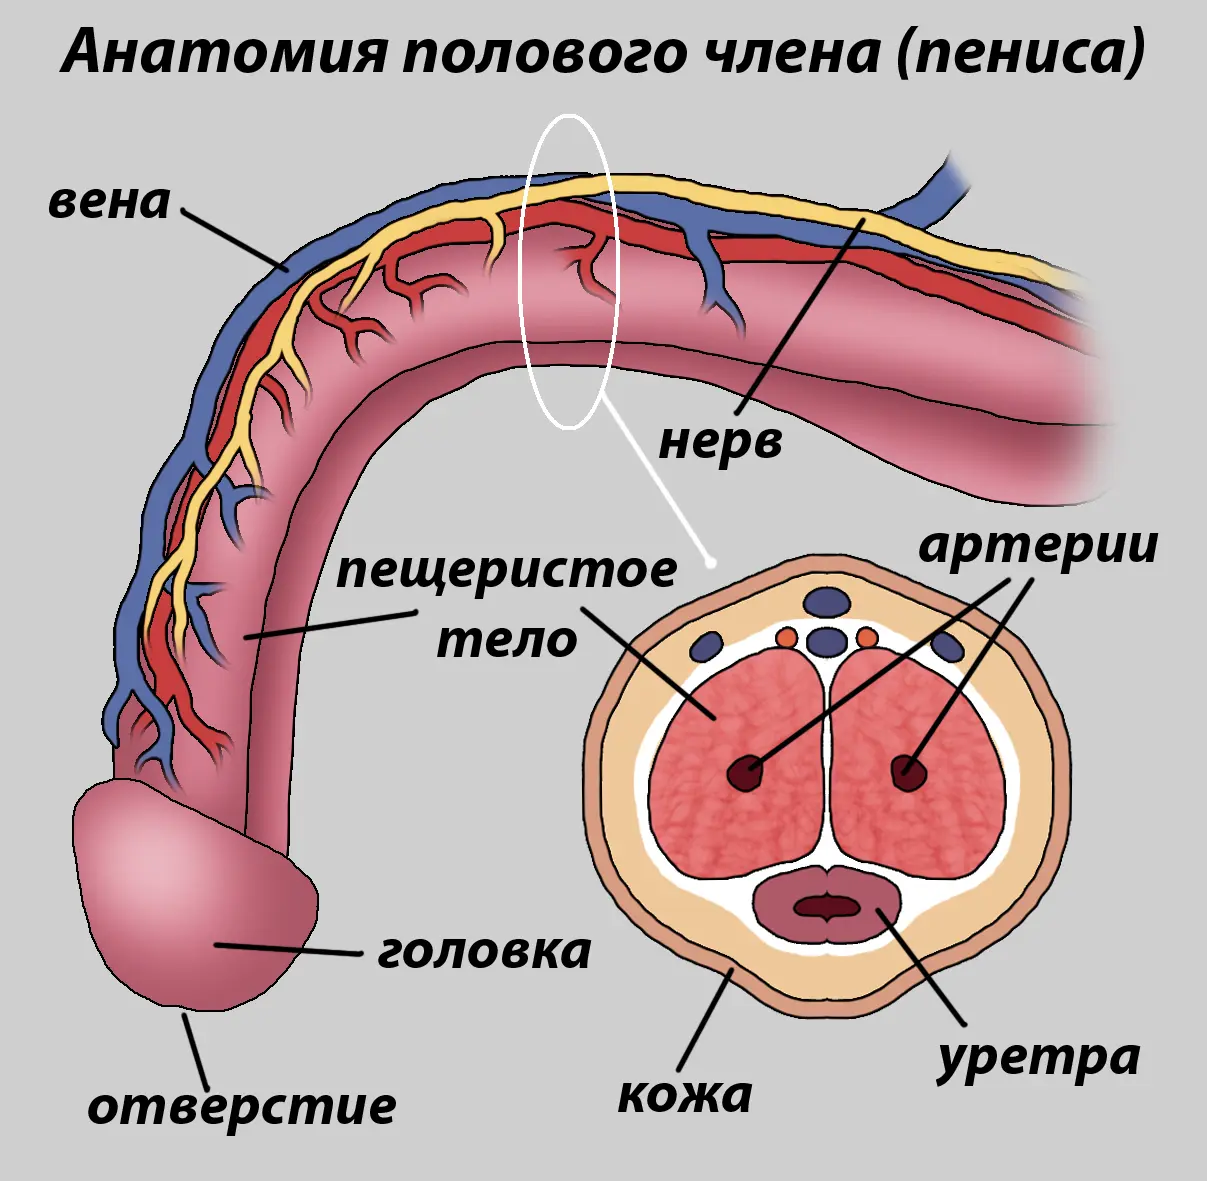 Анатомия и физиология мужской мочеполовой системы